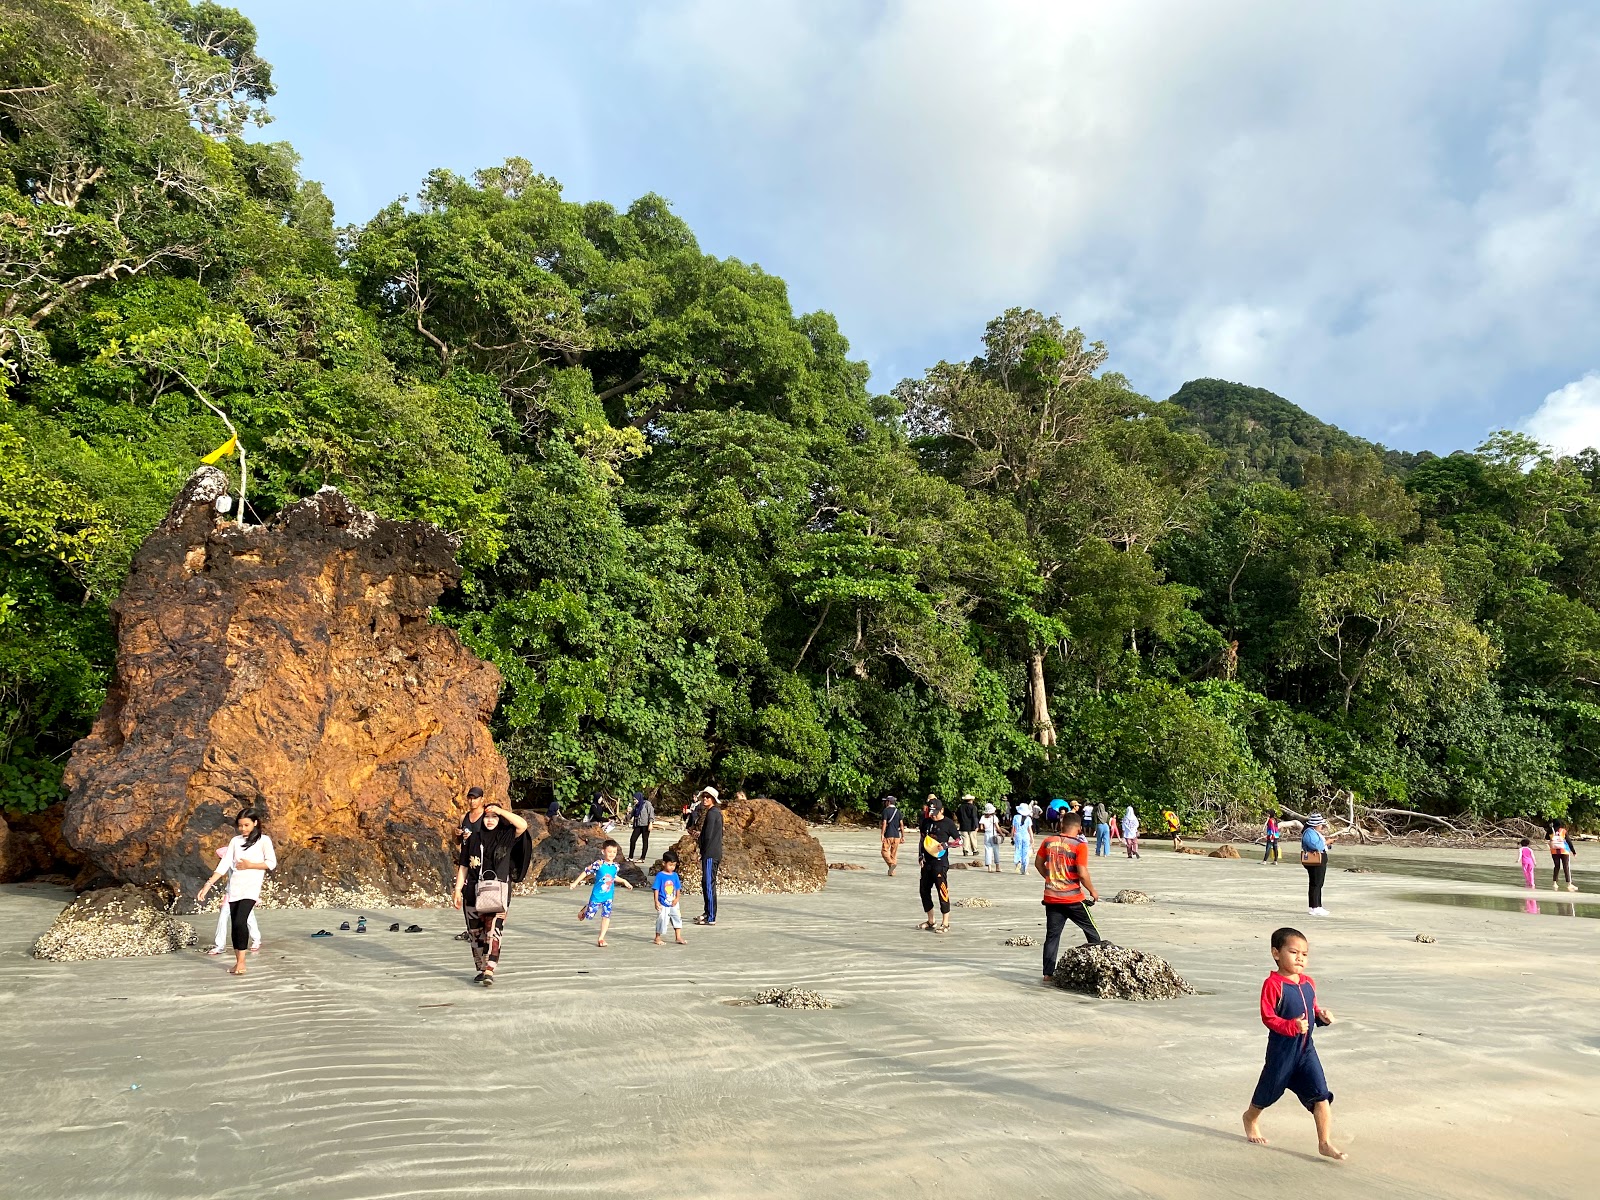 Stone Beach'in fotoğrafı - rahatlamayı sevenler arasında popüler bir yer